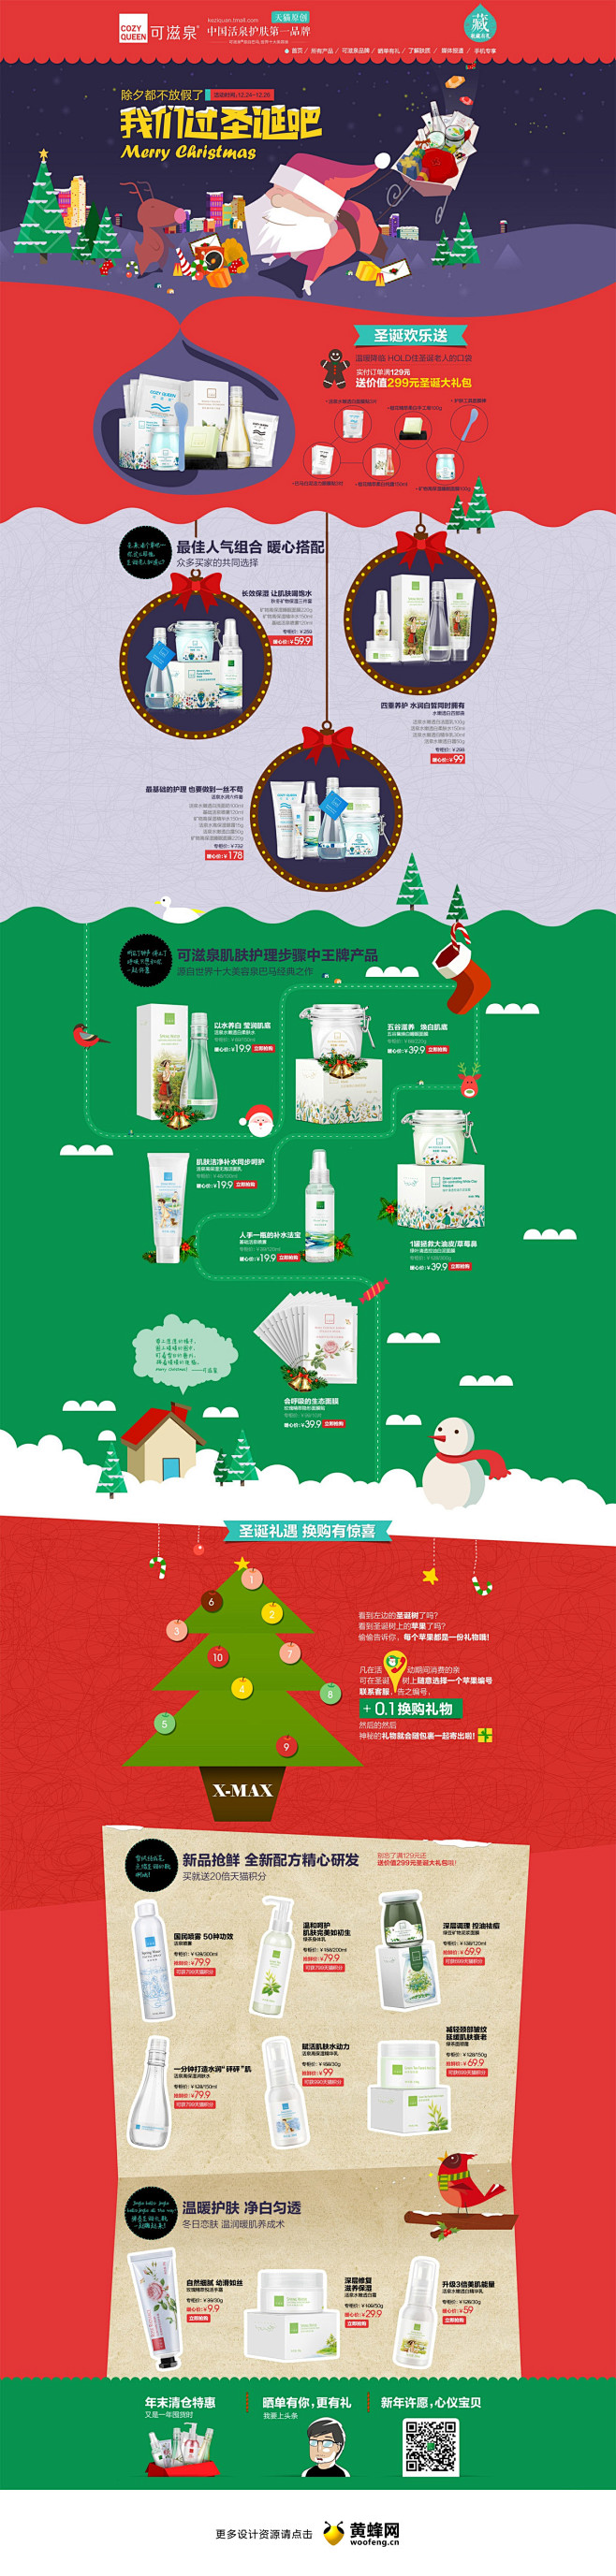 可滋泉化妆品圣诞节活动专题，来源自黄蜂网...